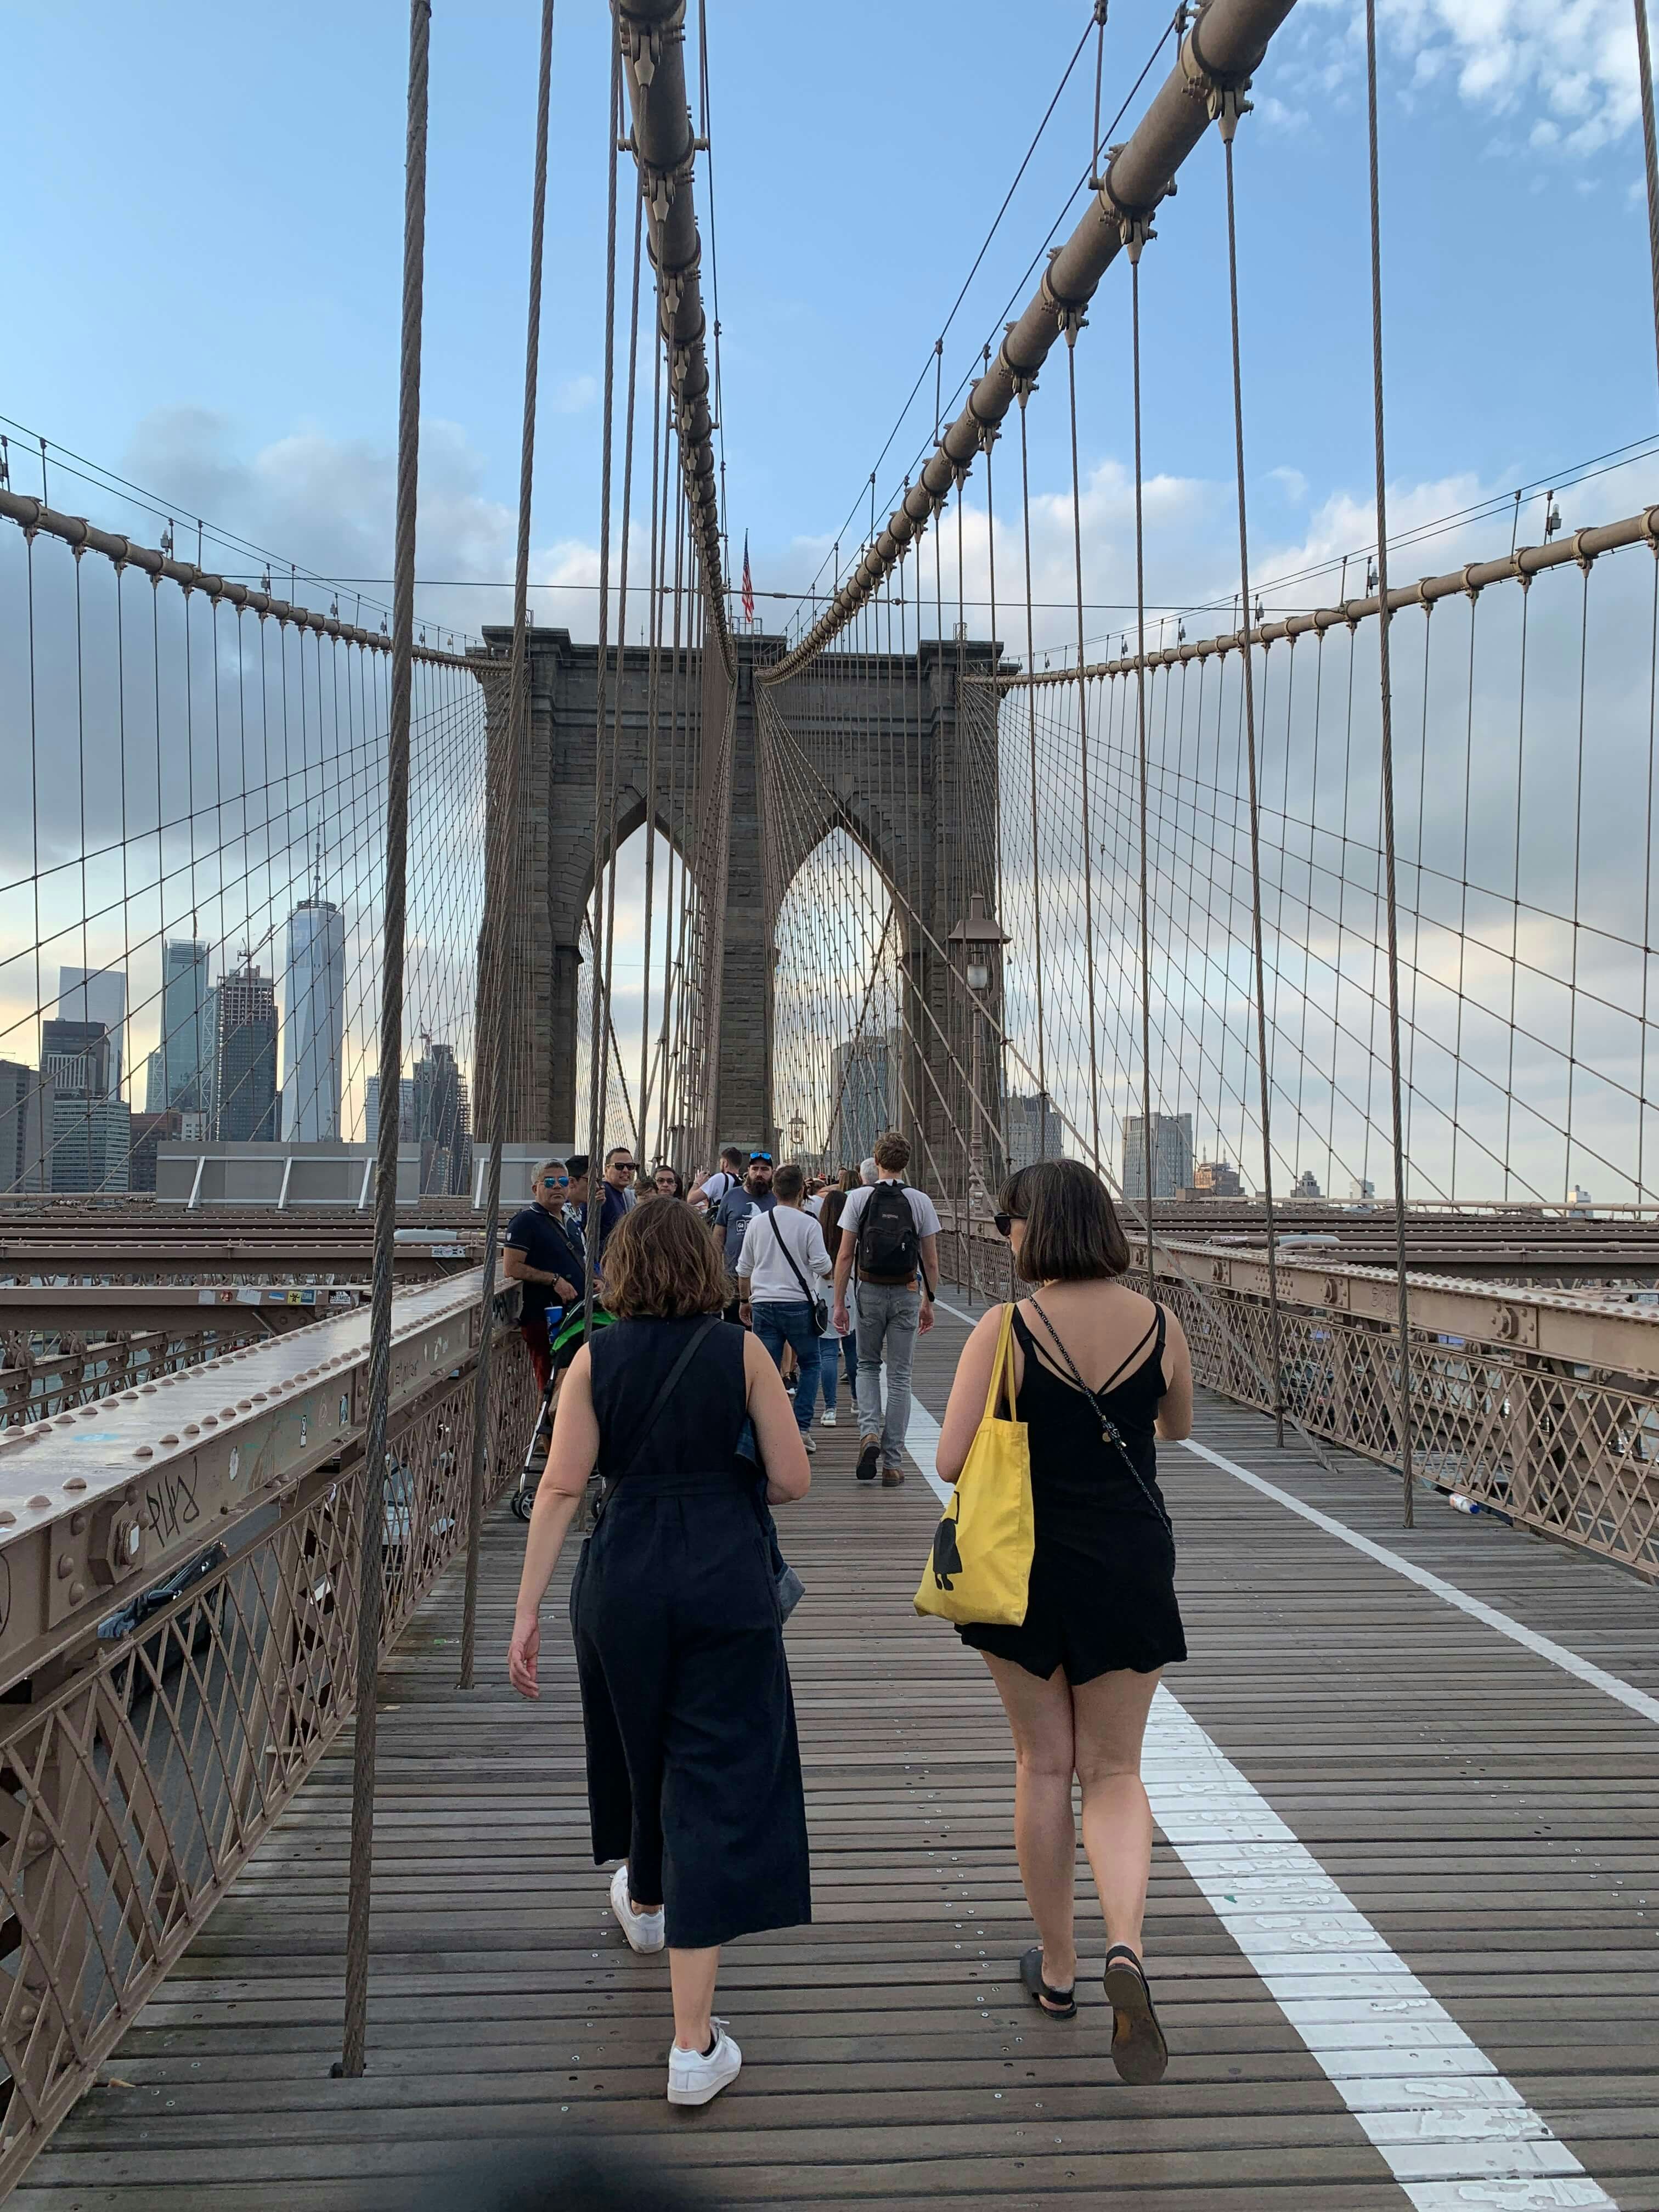 People walking across the Brooklyn Bridge. It is a clear, bright day.